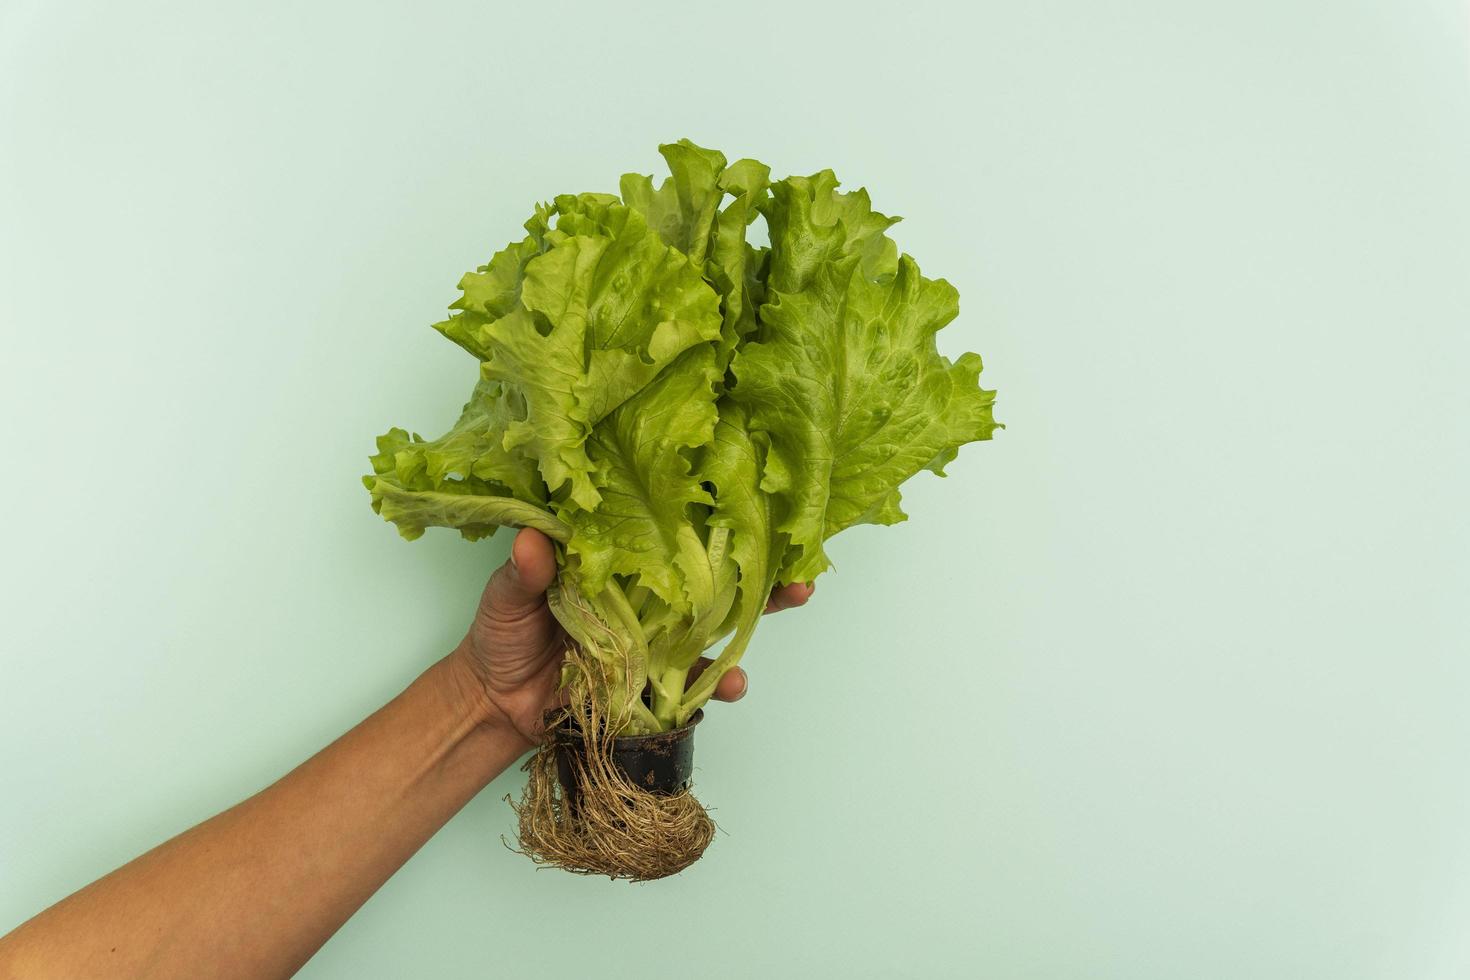 plante de laitue verte avec des racines dans les mains sur un fond turquoise, le concept d'une alimentation saine photo